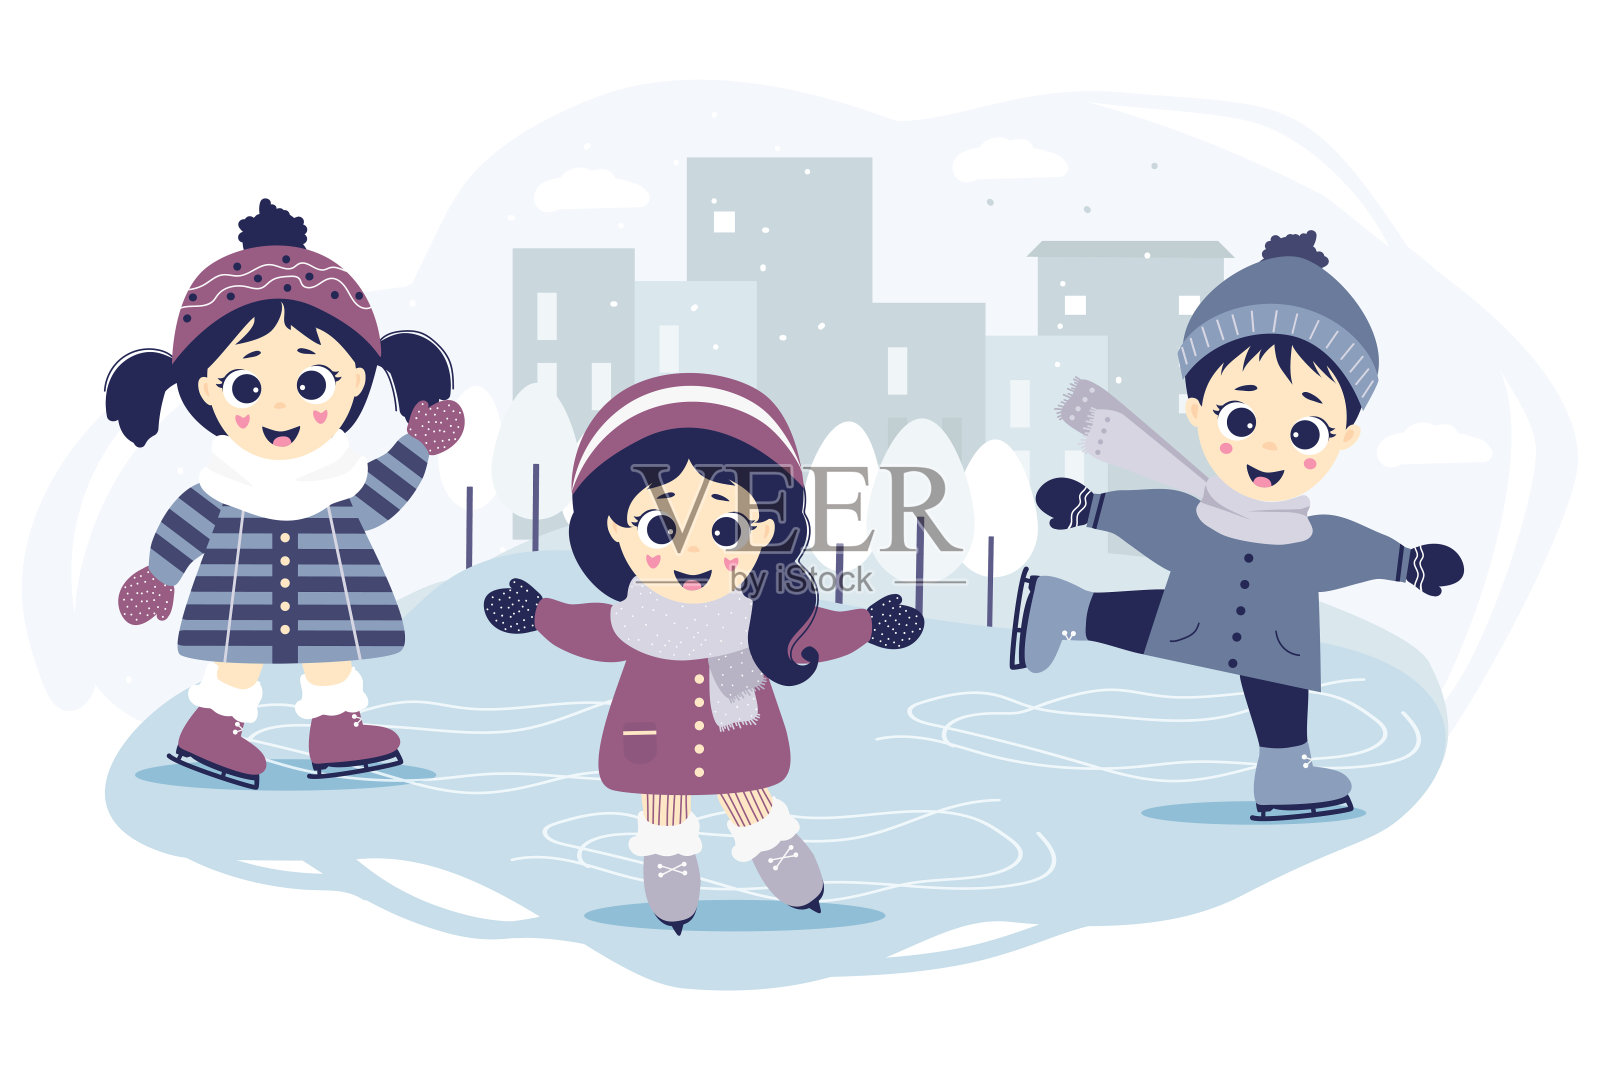 孩子们冬天。一个男孩和两个女孩在城市的一个溜冰场上滑冰，背景是蓝色的城市风景、房屋和树木。冬季运动和娱乐。向量。宝贝说明插画图片素材